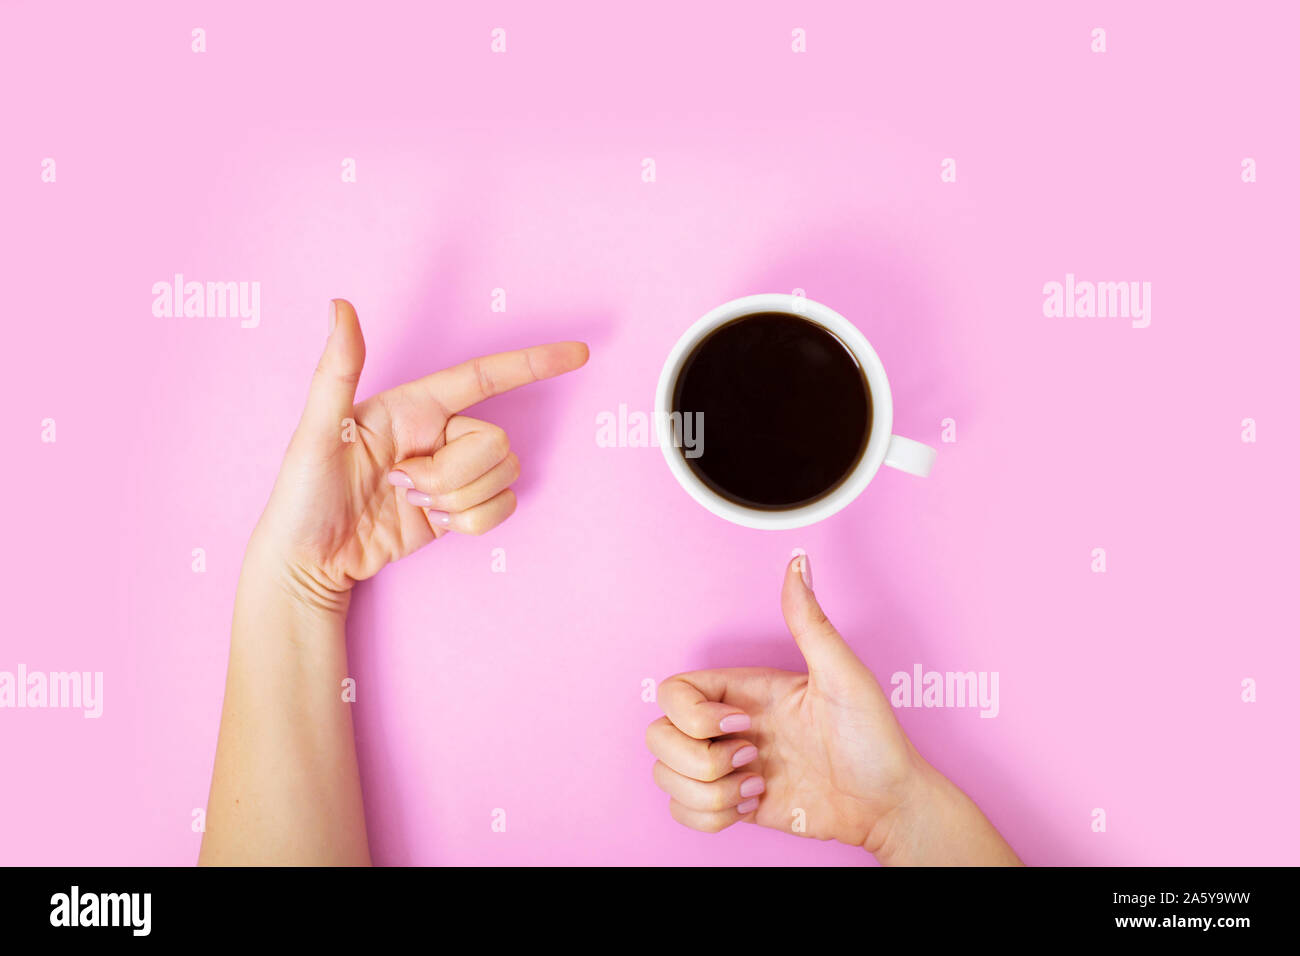 Flatlay avec du café noir dans une tasse blanche sur fond rose. Woman showing thumb up sign, et en pointant du doigt une autre tasse avec la main. Banque D'Images